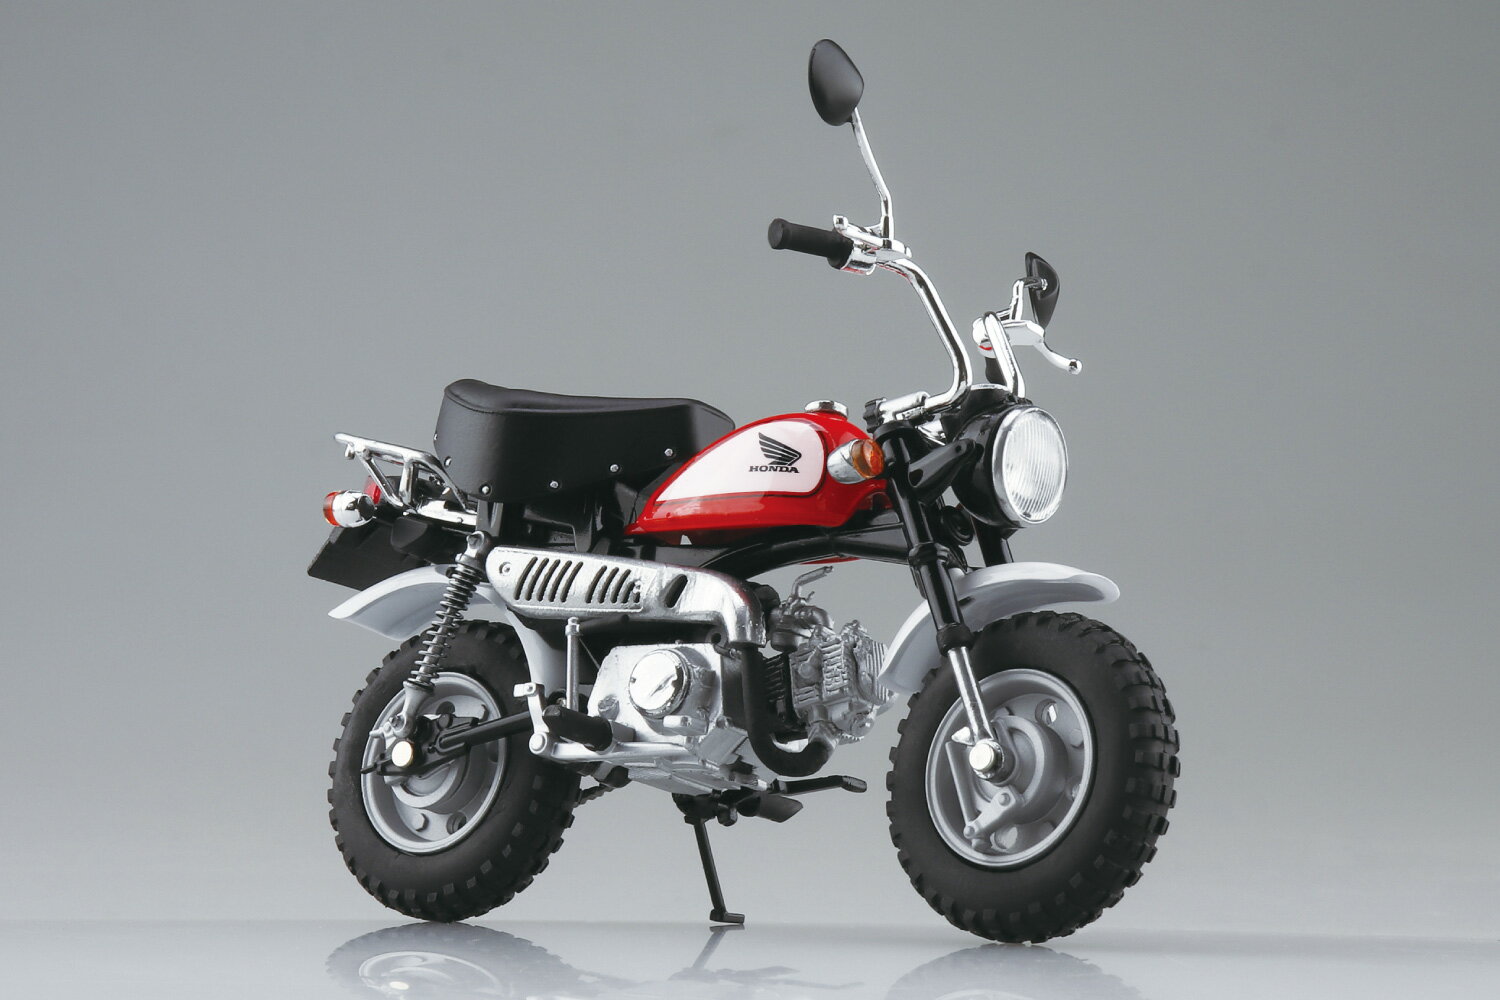 小さなロングセラー” 完成品バイクシリーズに登場！

【商品説明】
1967年から発売が開始された、Honda モンキー。
その中から1992年より発売された12V仕様のモンキーが登場です。
シート形状や4.5Lタンク、サイドカバーなど、特徴的なシルエットを余すことなく再現しました。
フレーム・タンク・ホイールはダイキャスト製を採用し、重量感・質感ともにハイレベルな完成品モデルです。
是非お手元でお楽しみください。

【商品仕様】
・塗装済み完成品
・ステアリング・リヤサスペンション可動
・素材：本体/ダイキャスト・ABS・PS　タイヤ/TPR
・スケール：1/12
・サイズ：全長約115mm
・ディスプレイ台座付属
・アオシマオリジナル開発商品

※画像は試作品です。実際の商品とは異なる場合がございます。【対象年齢】：【商品サイズ (cm)】(幅）：11.5